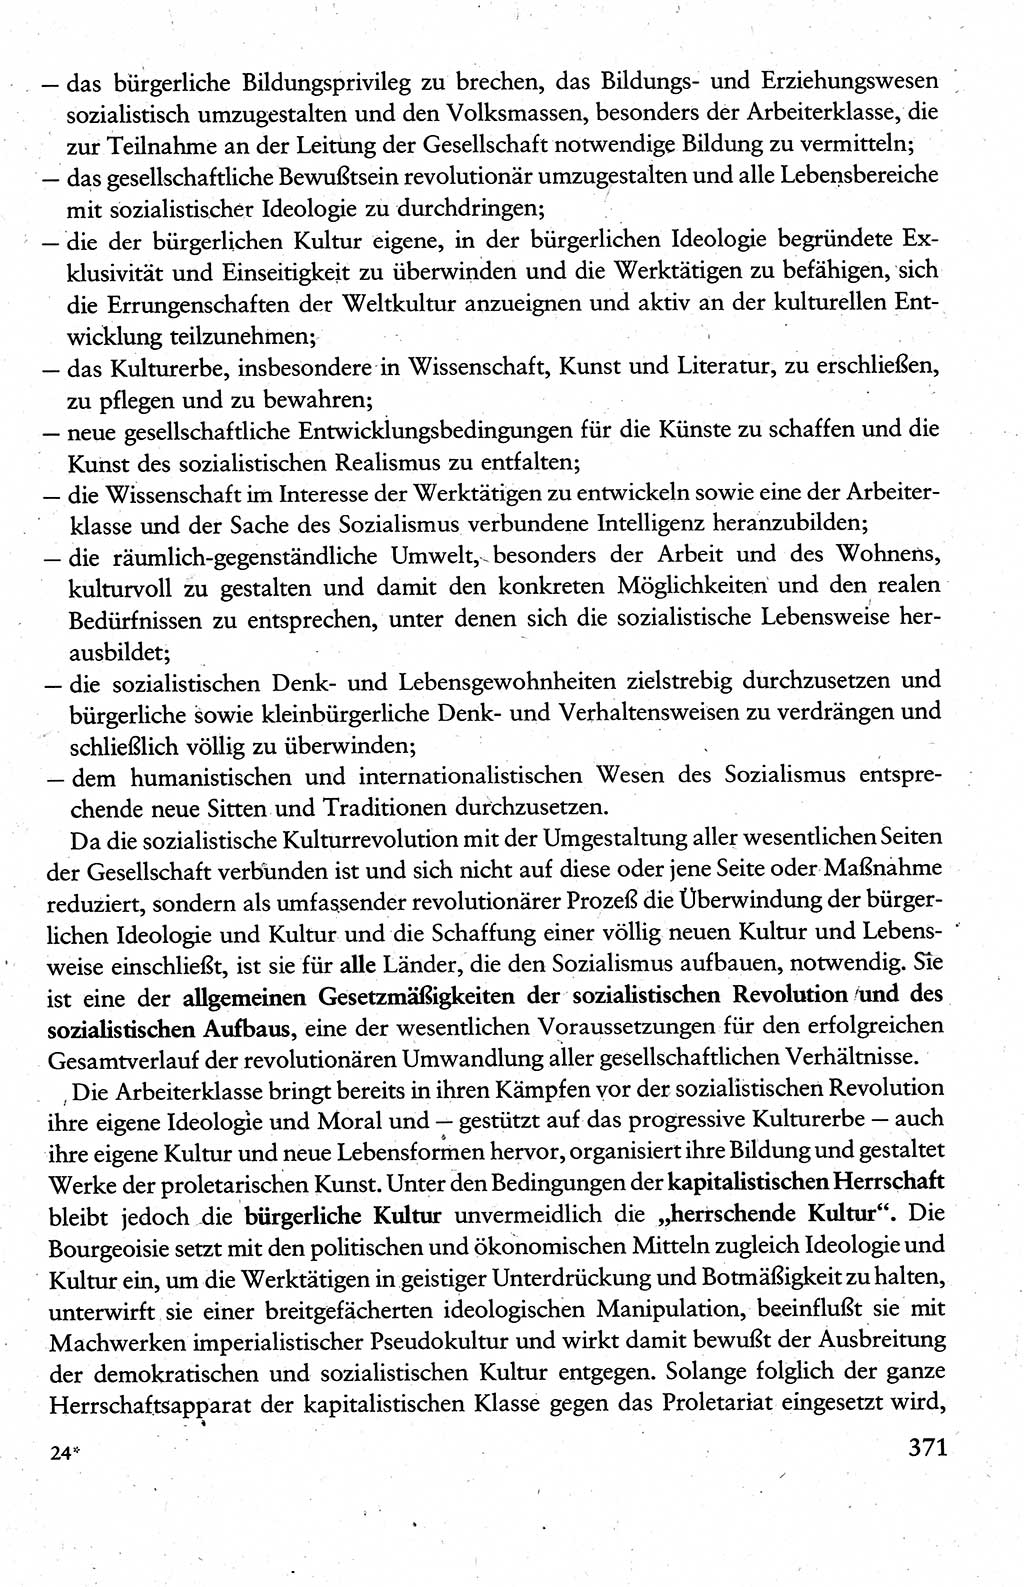 Wissenschaftlicher Kommunismus [Deutsche Demokratische Republik (DDR)], Lehrbuch für das marxistisch-leninistische Grundlagenstudium 1983, Seite 371 (Wiss. Komm. DDR Lb. 1983, S. 371)